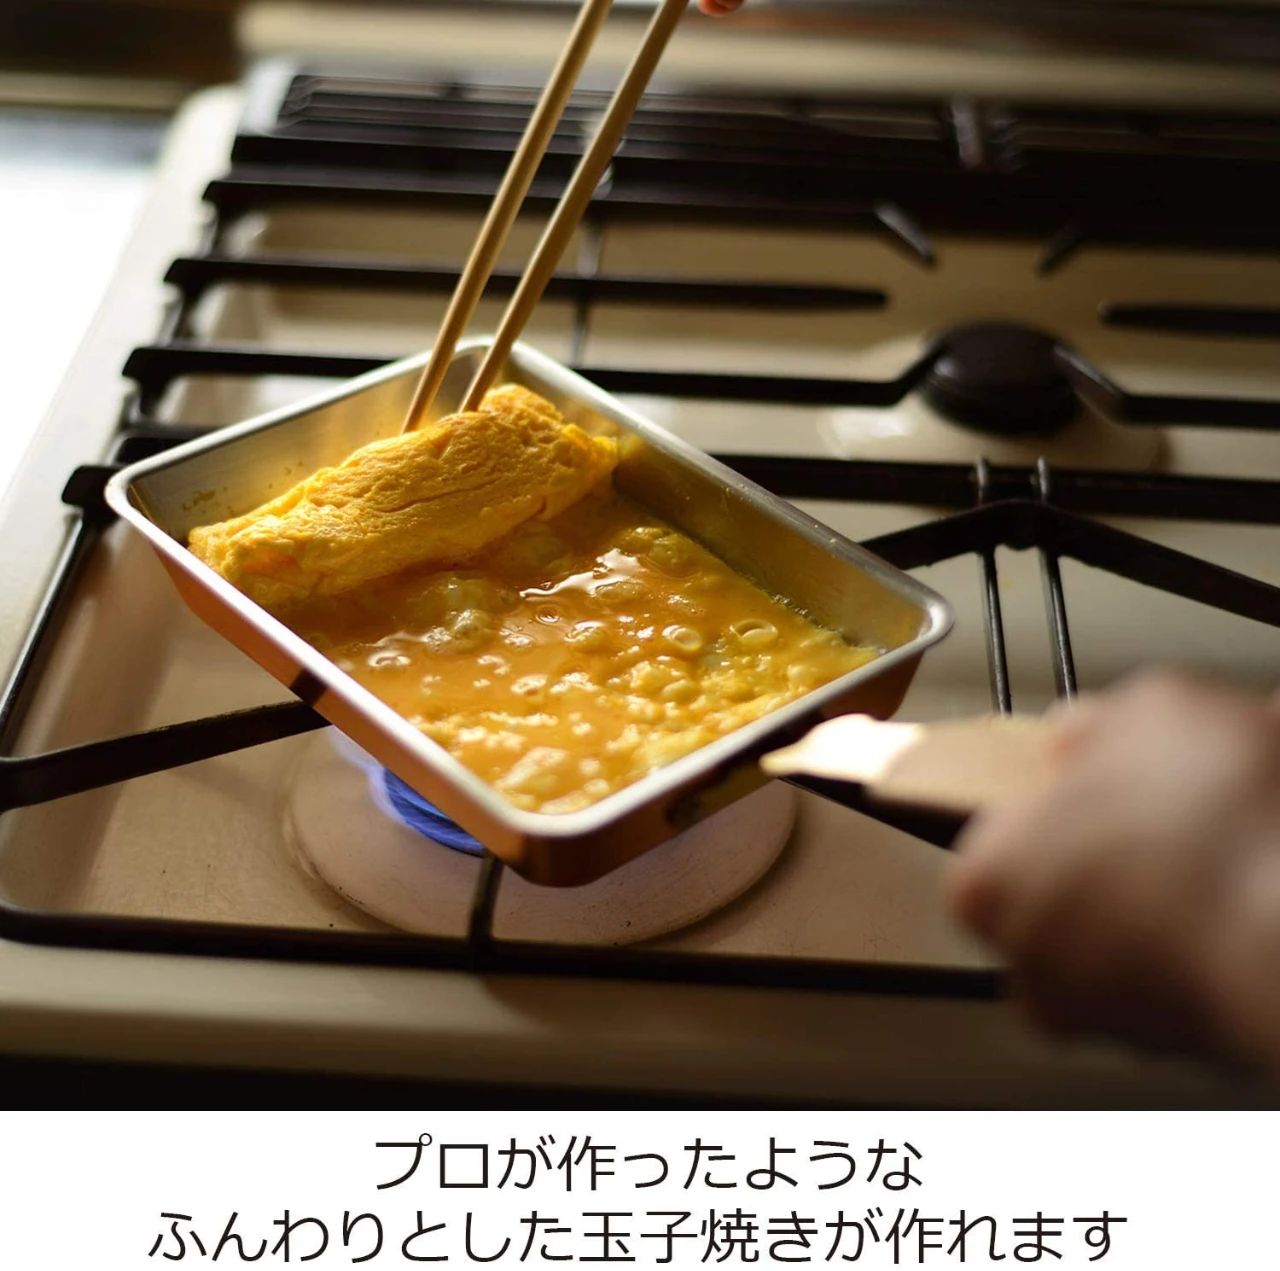 日本旅游指南：日本各地有什么特殊的饮食文化？_图片 No.9